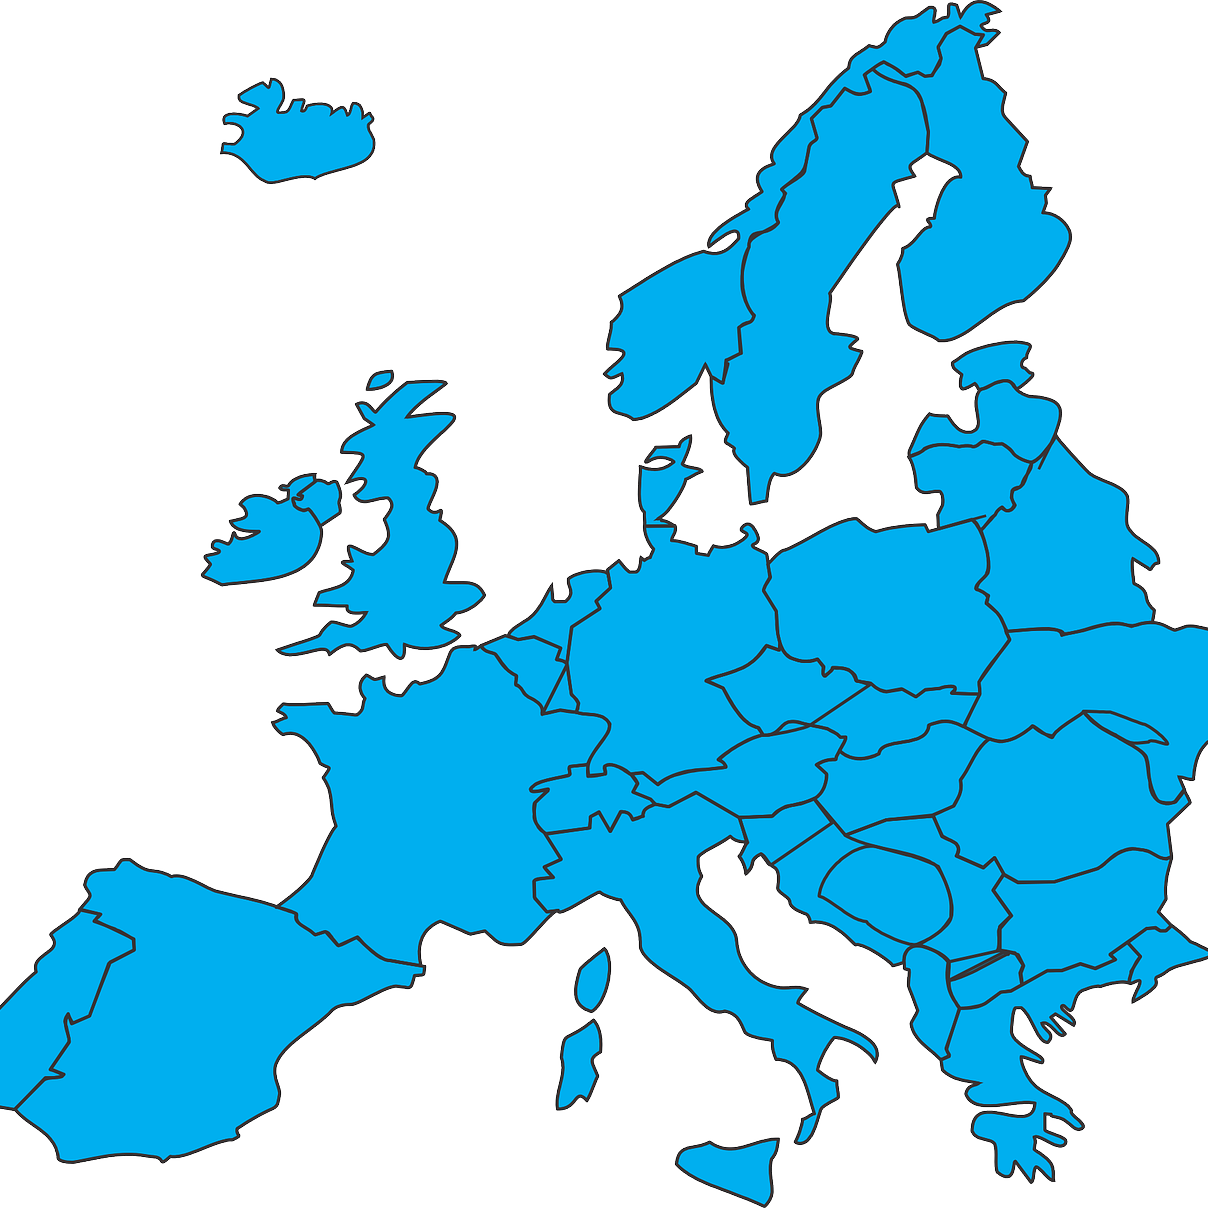 Europa de. Карта - Европа. Очертания Европы. Векторная карта Европы. Европа очертание континента.